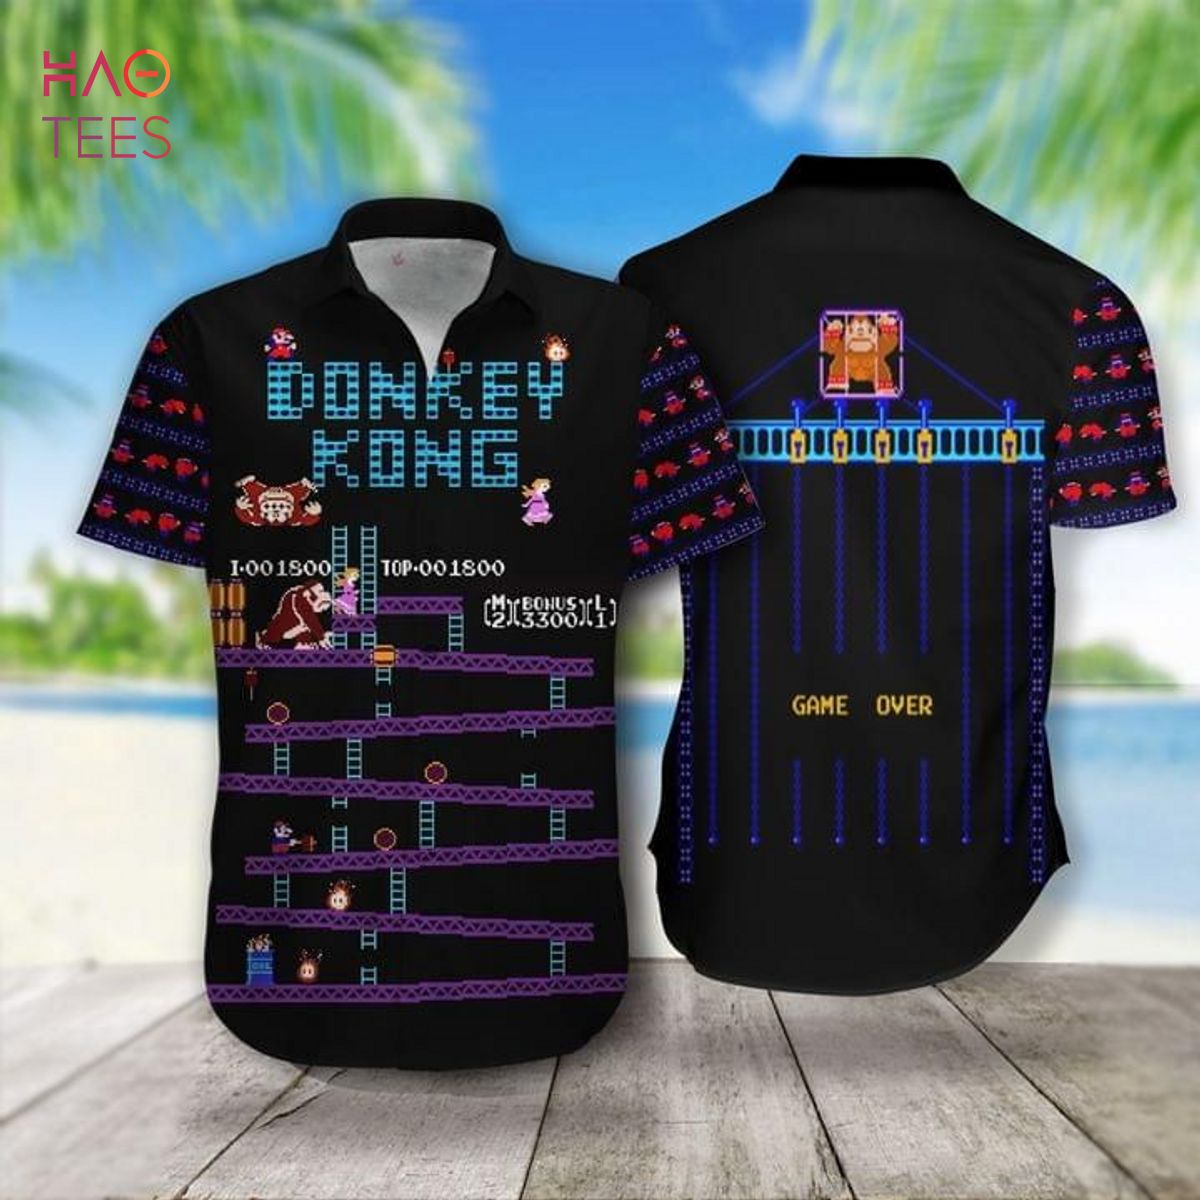 donkey kong shirt